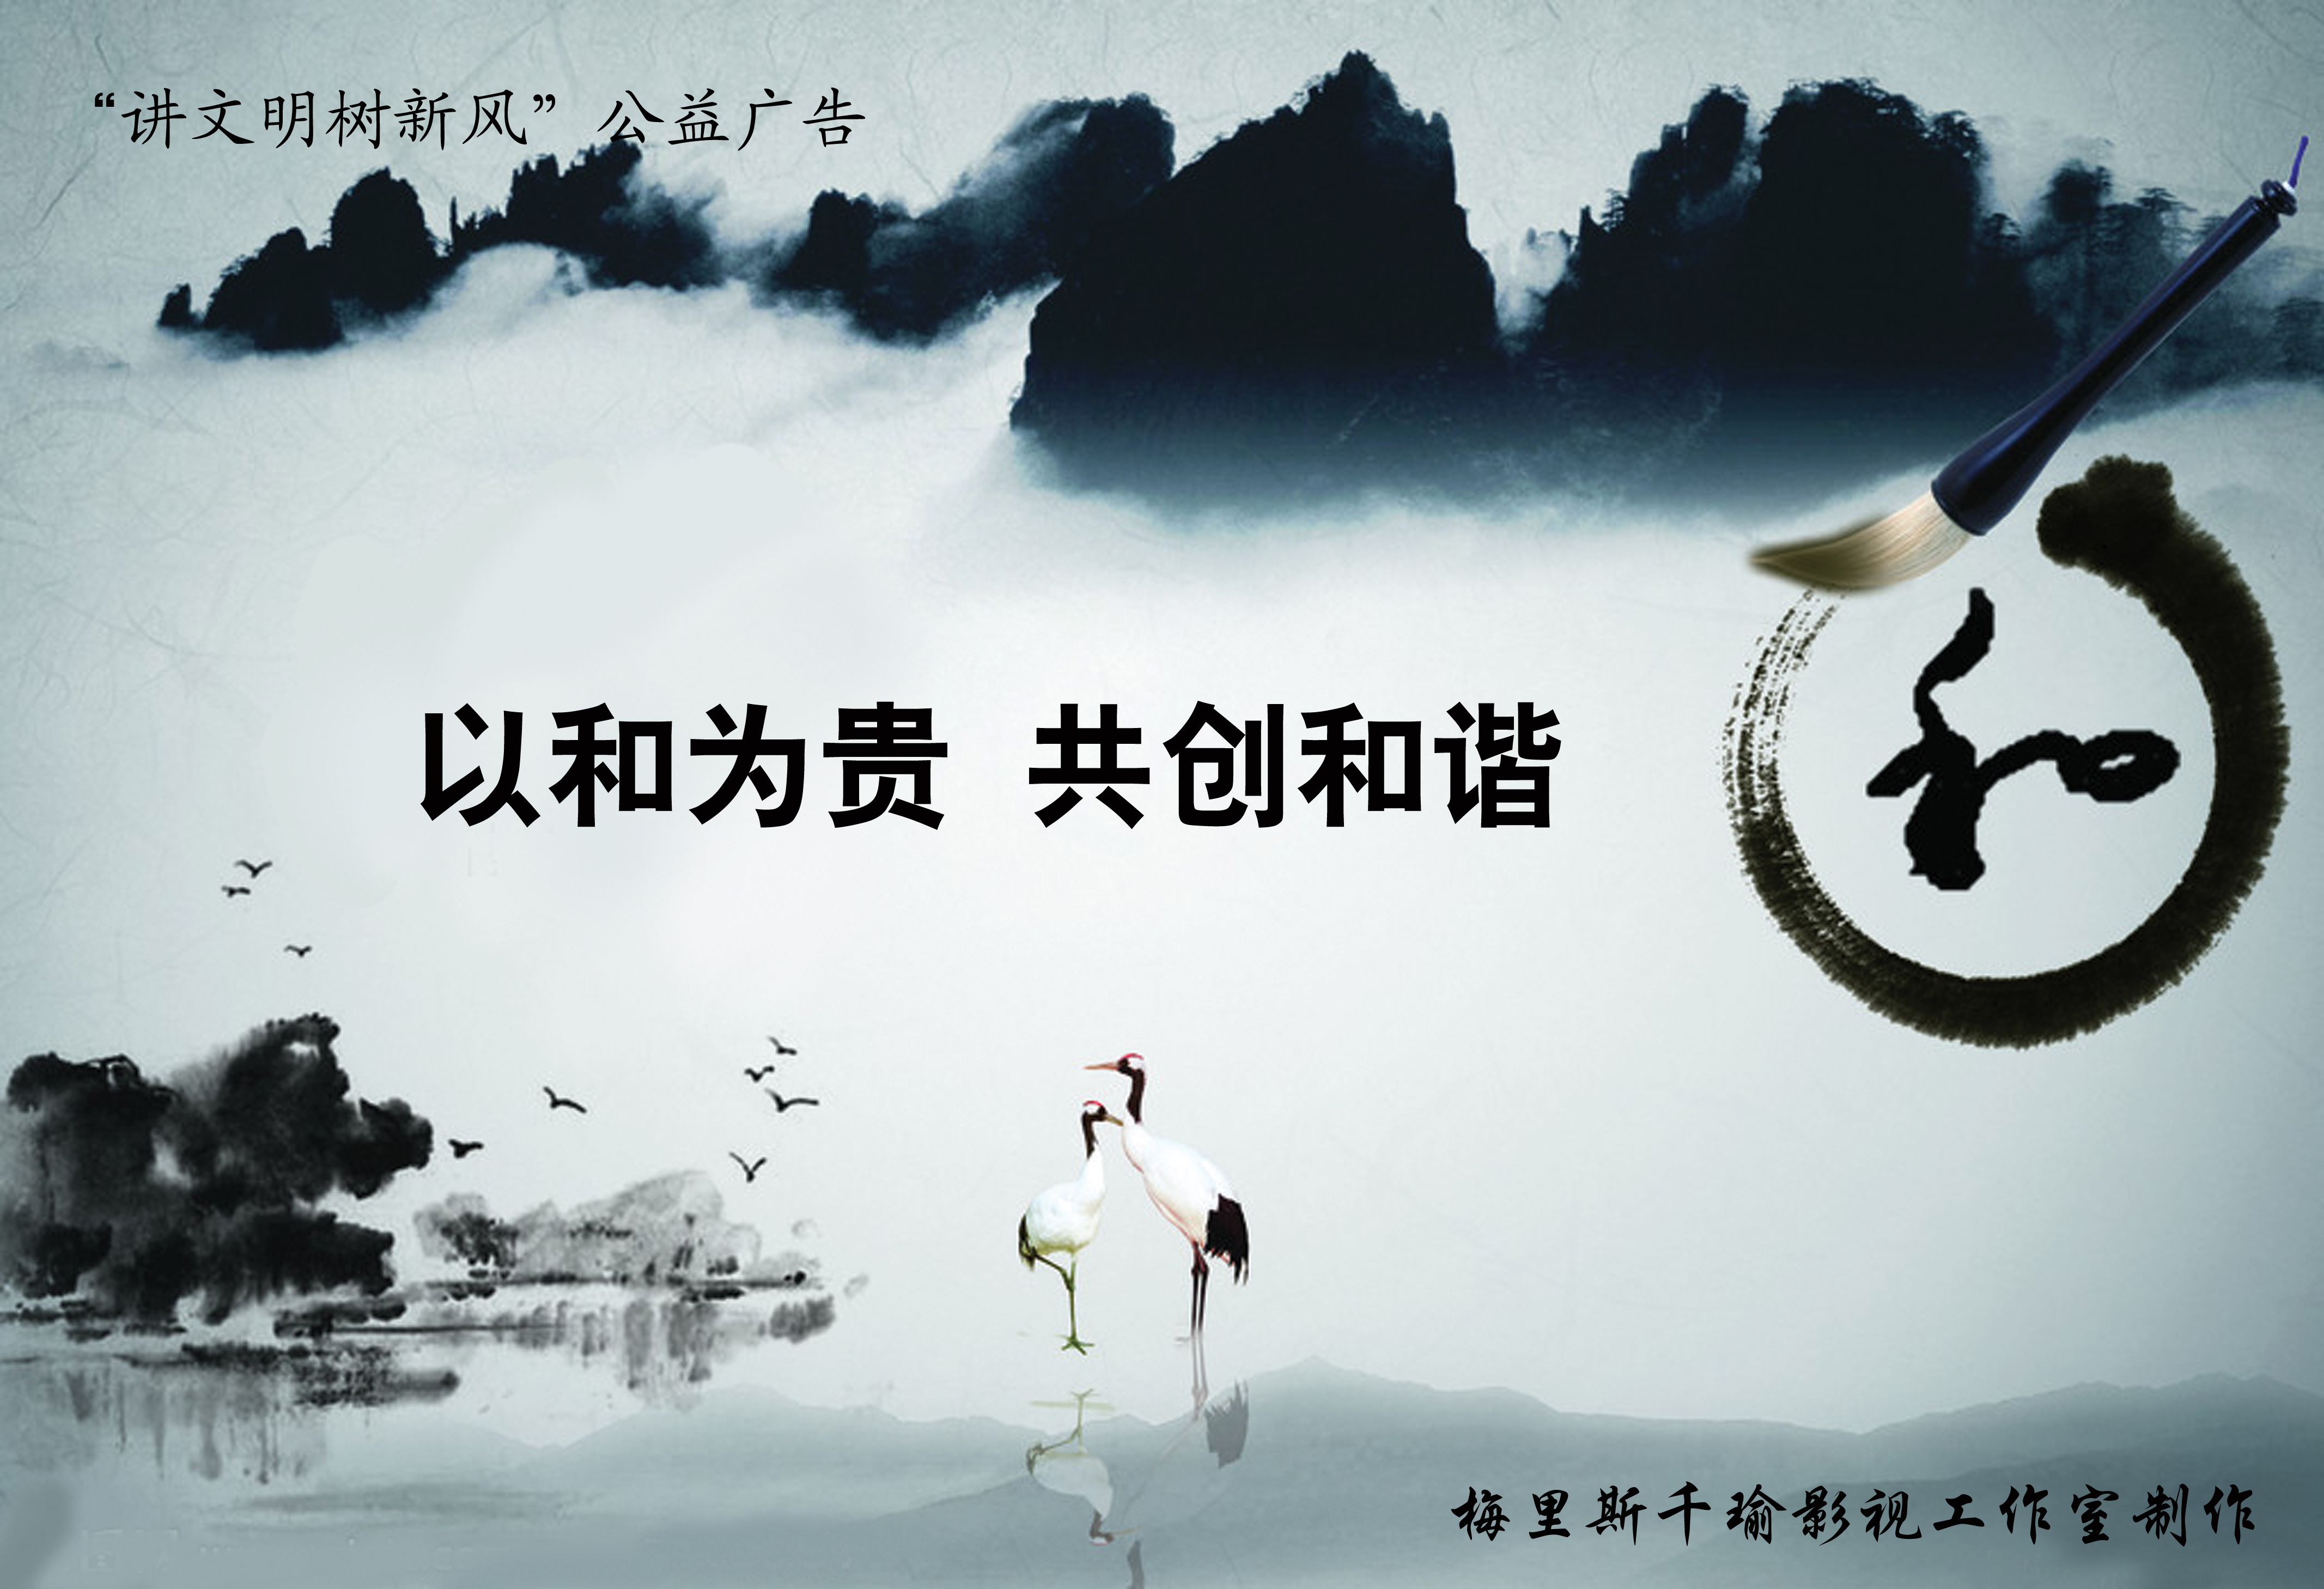 《以和为贵 共创和谐-平面广告-黑龙江公益广告网